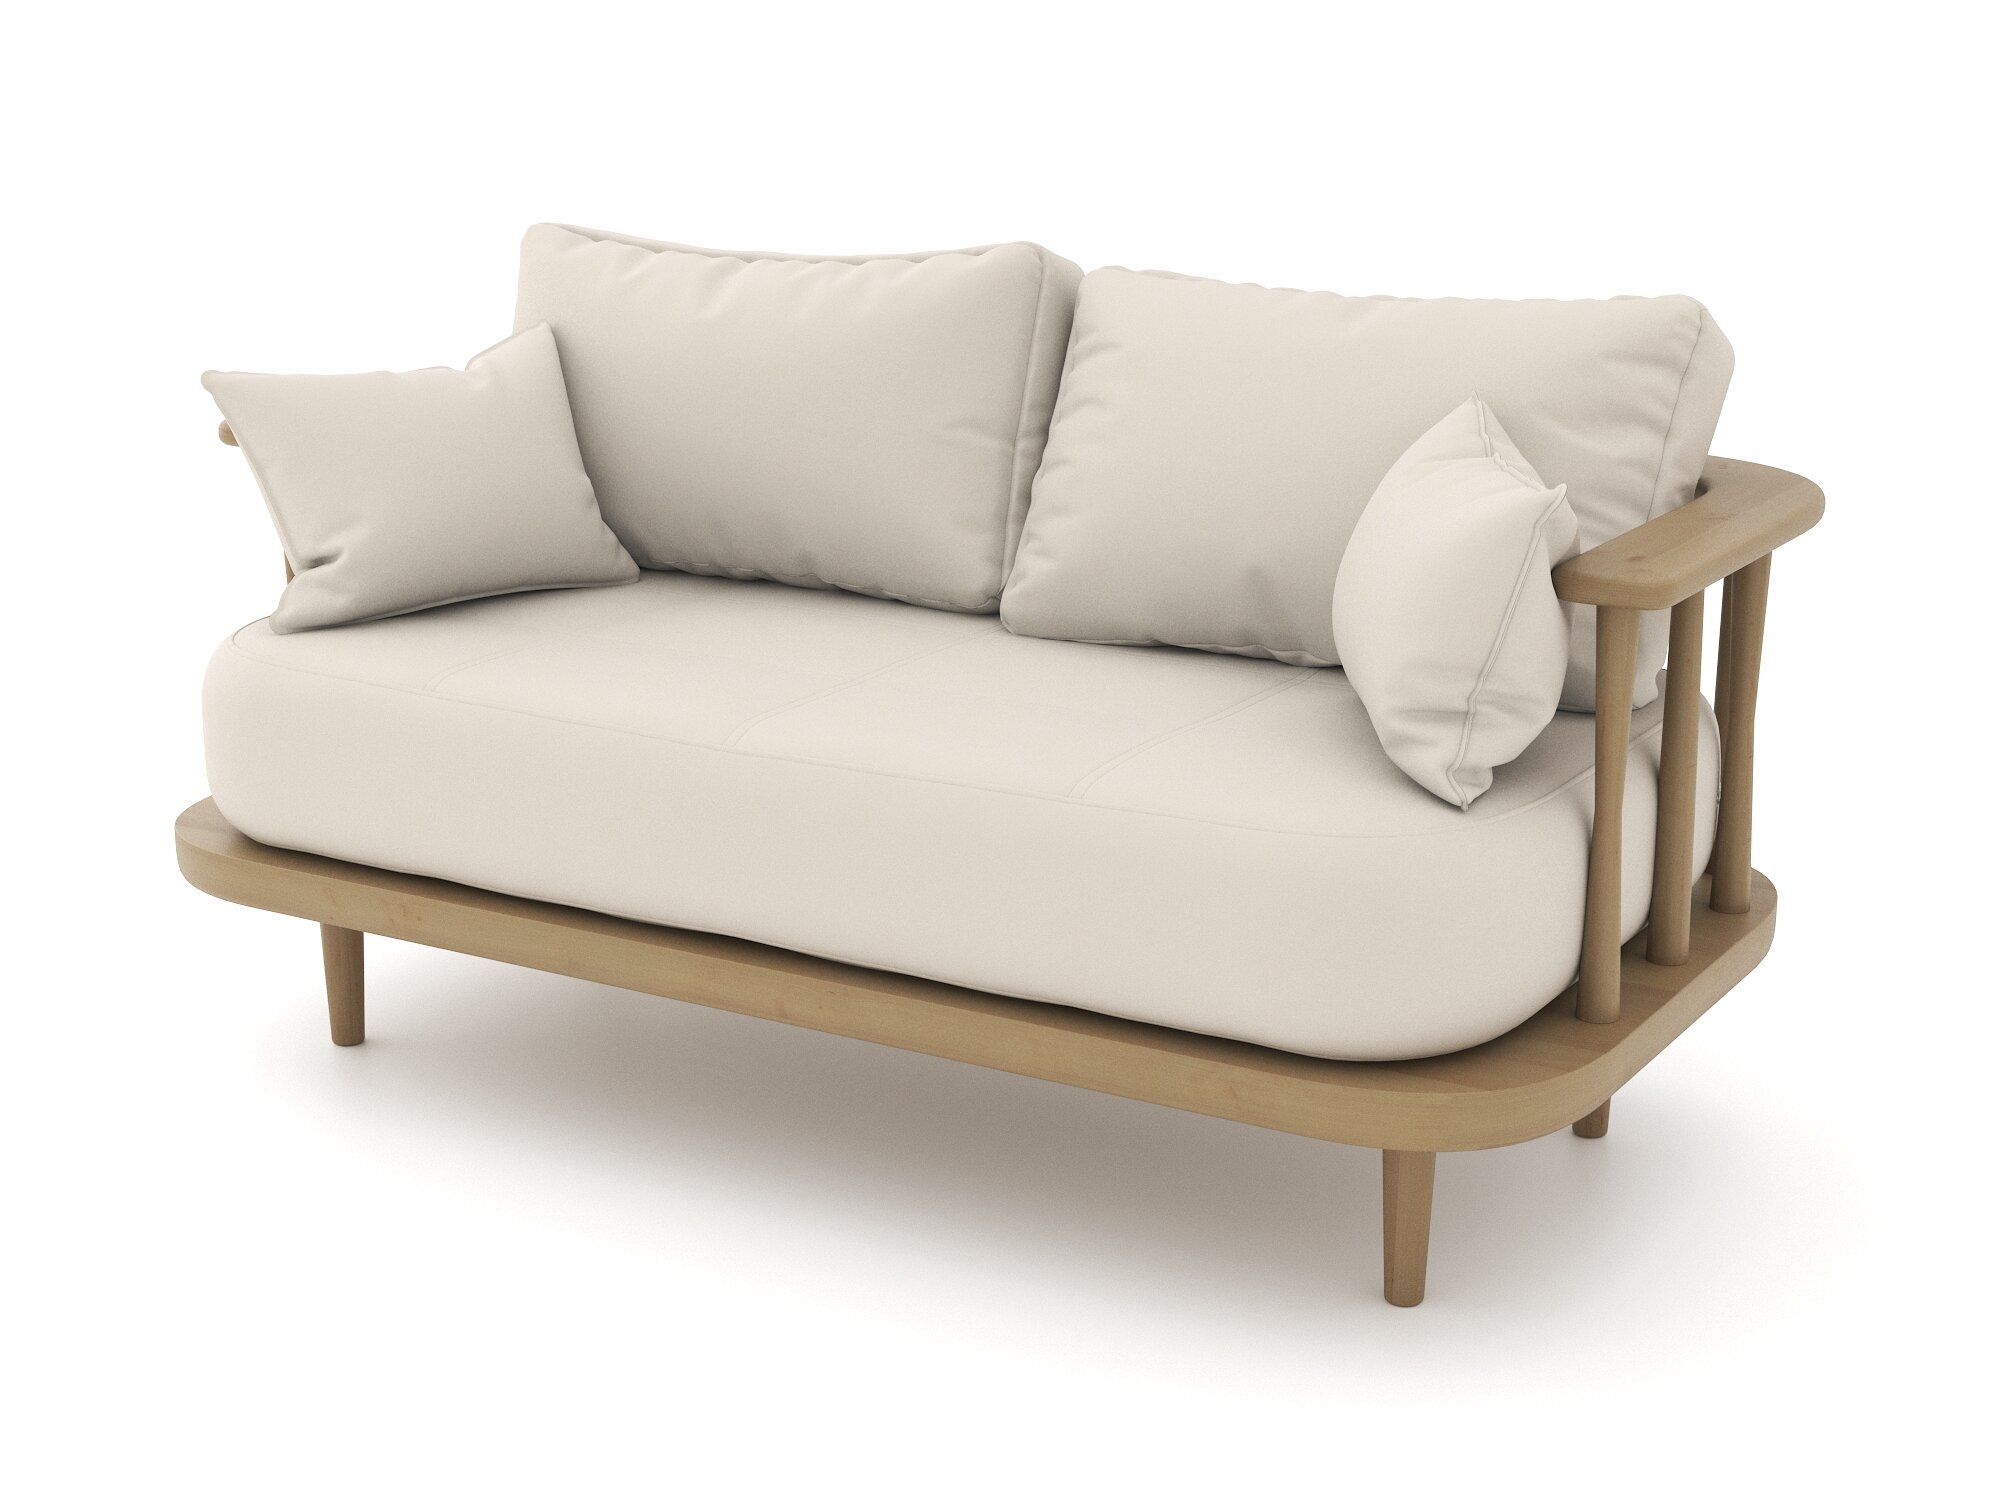 Деревянный диван Soft Element Ламе, двухместный, велюр, светло-бежевый, стиль скандинавский лофт, на кухню, в офис, на дачу, в баню